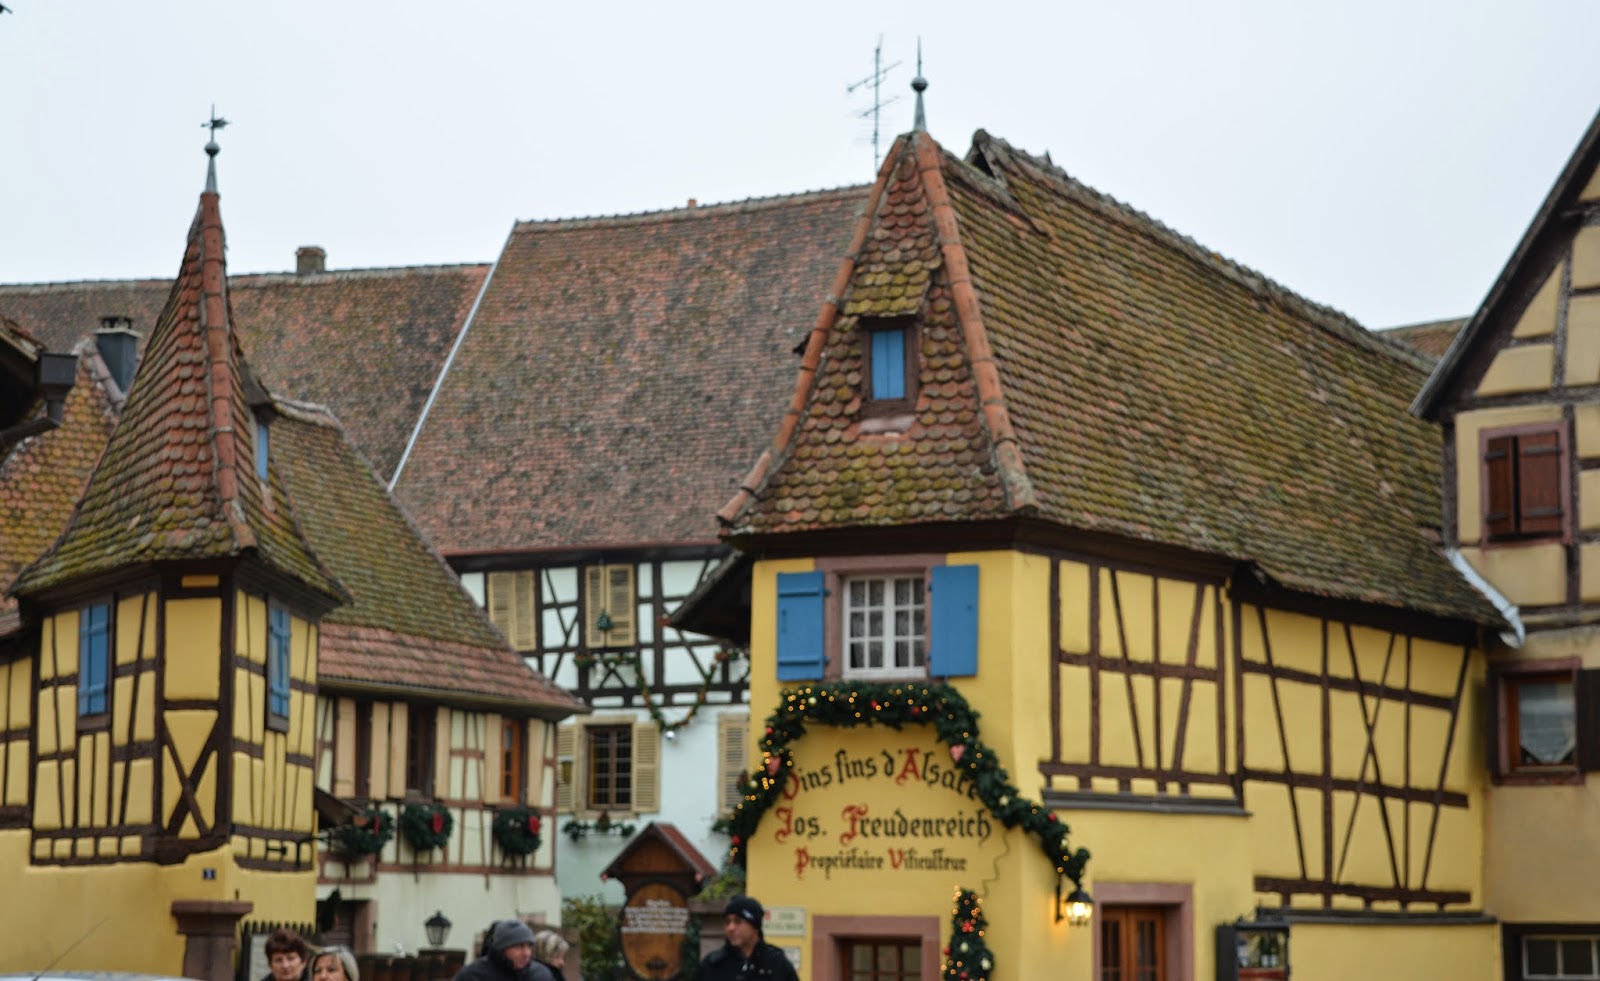 Eguisheim : O Vilarejo Preferido dos Franceses